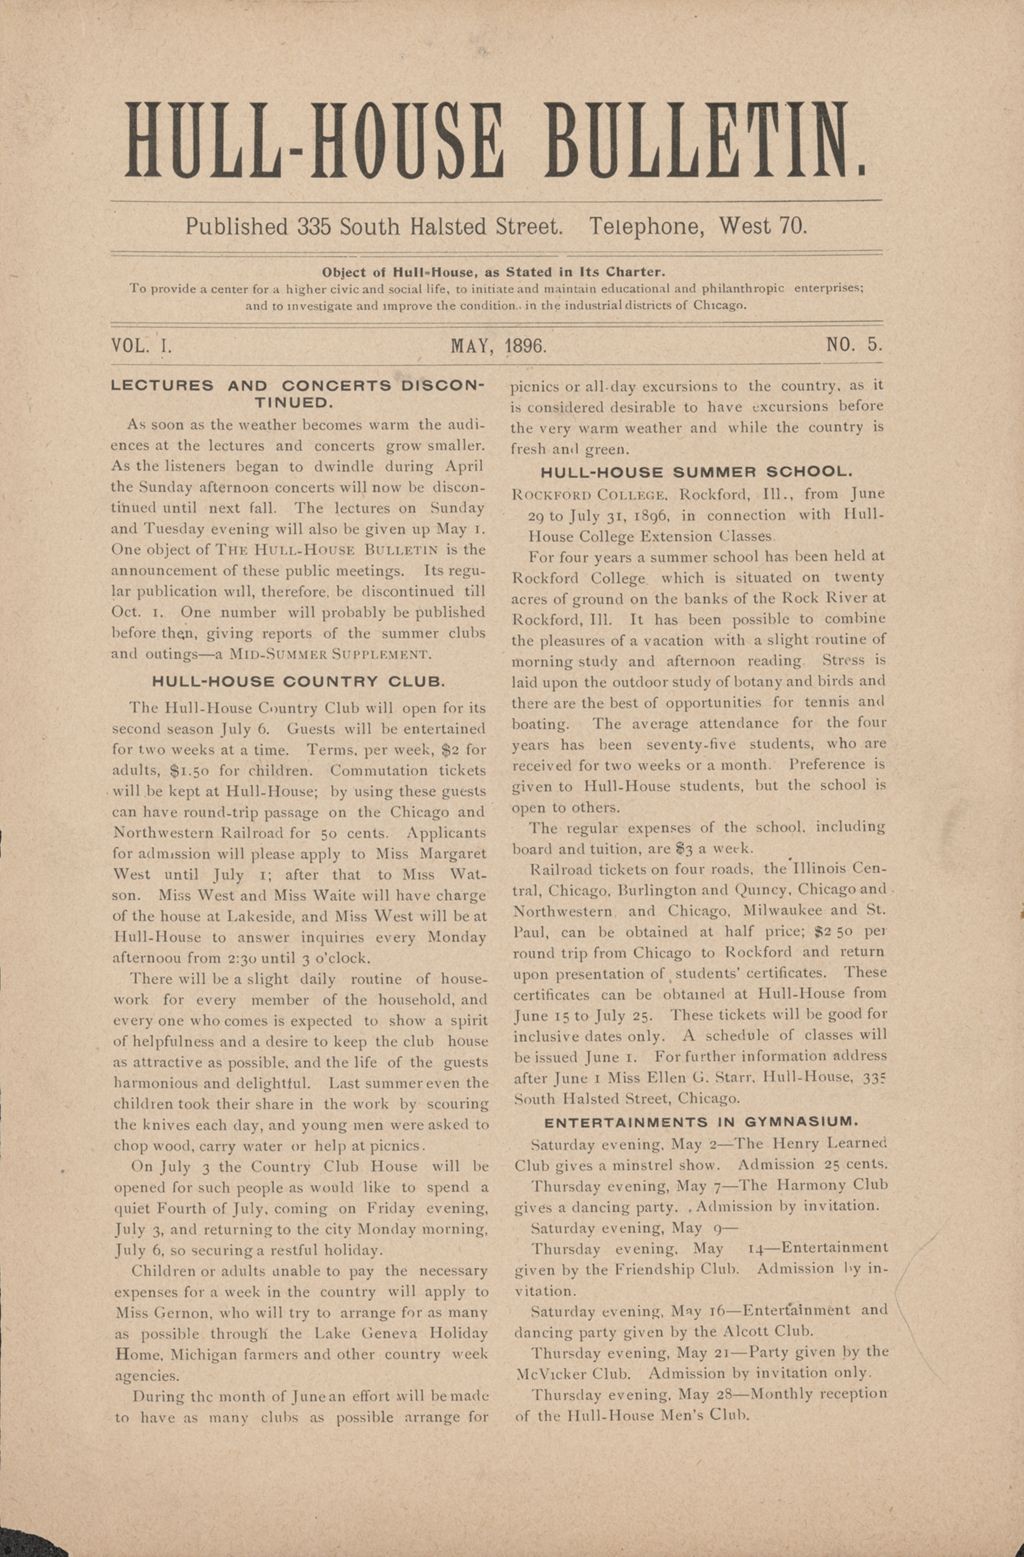 Hull-House Bulletin, vol. 1, no. 5, 1896: May